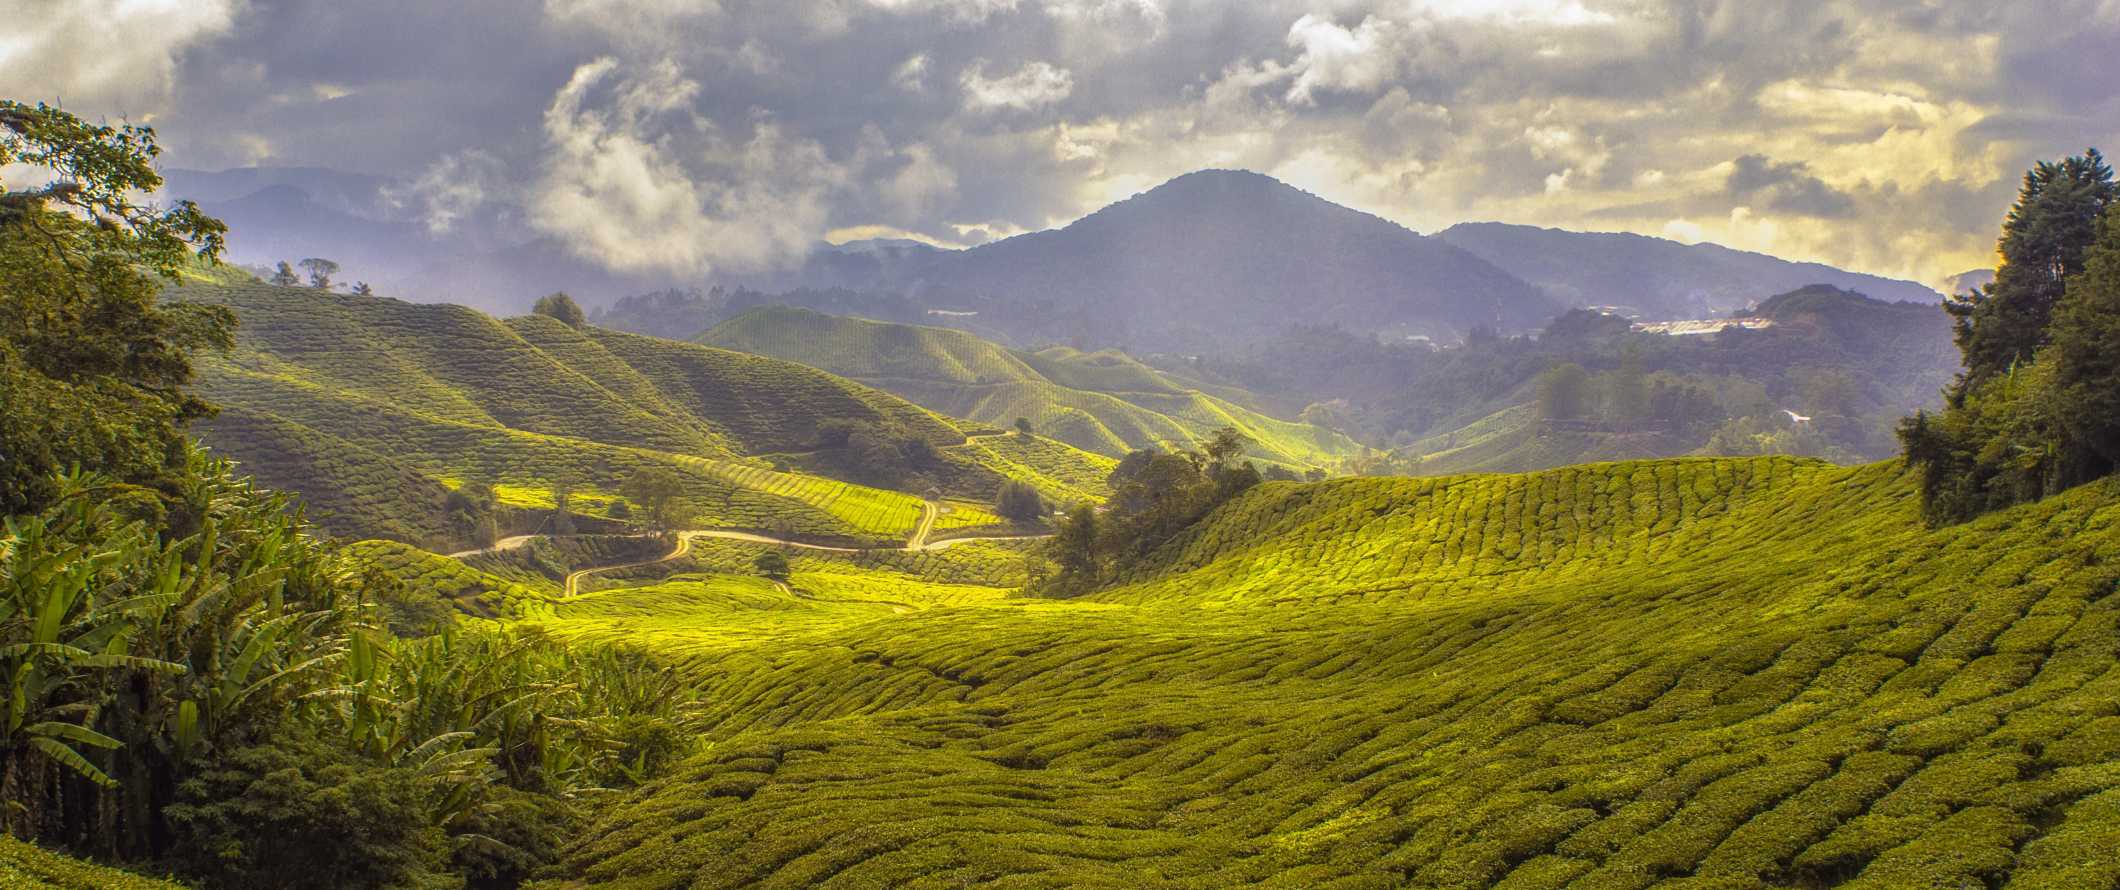 Vista deslumbrante das Terras Altas de Camron, Malásia e suas exuberantes colinas verdes